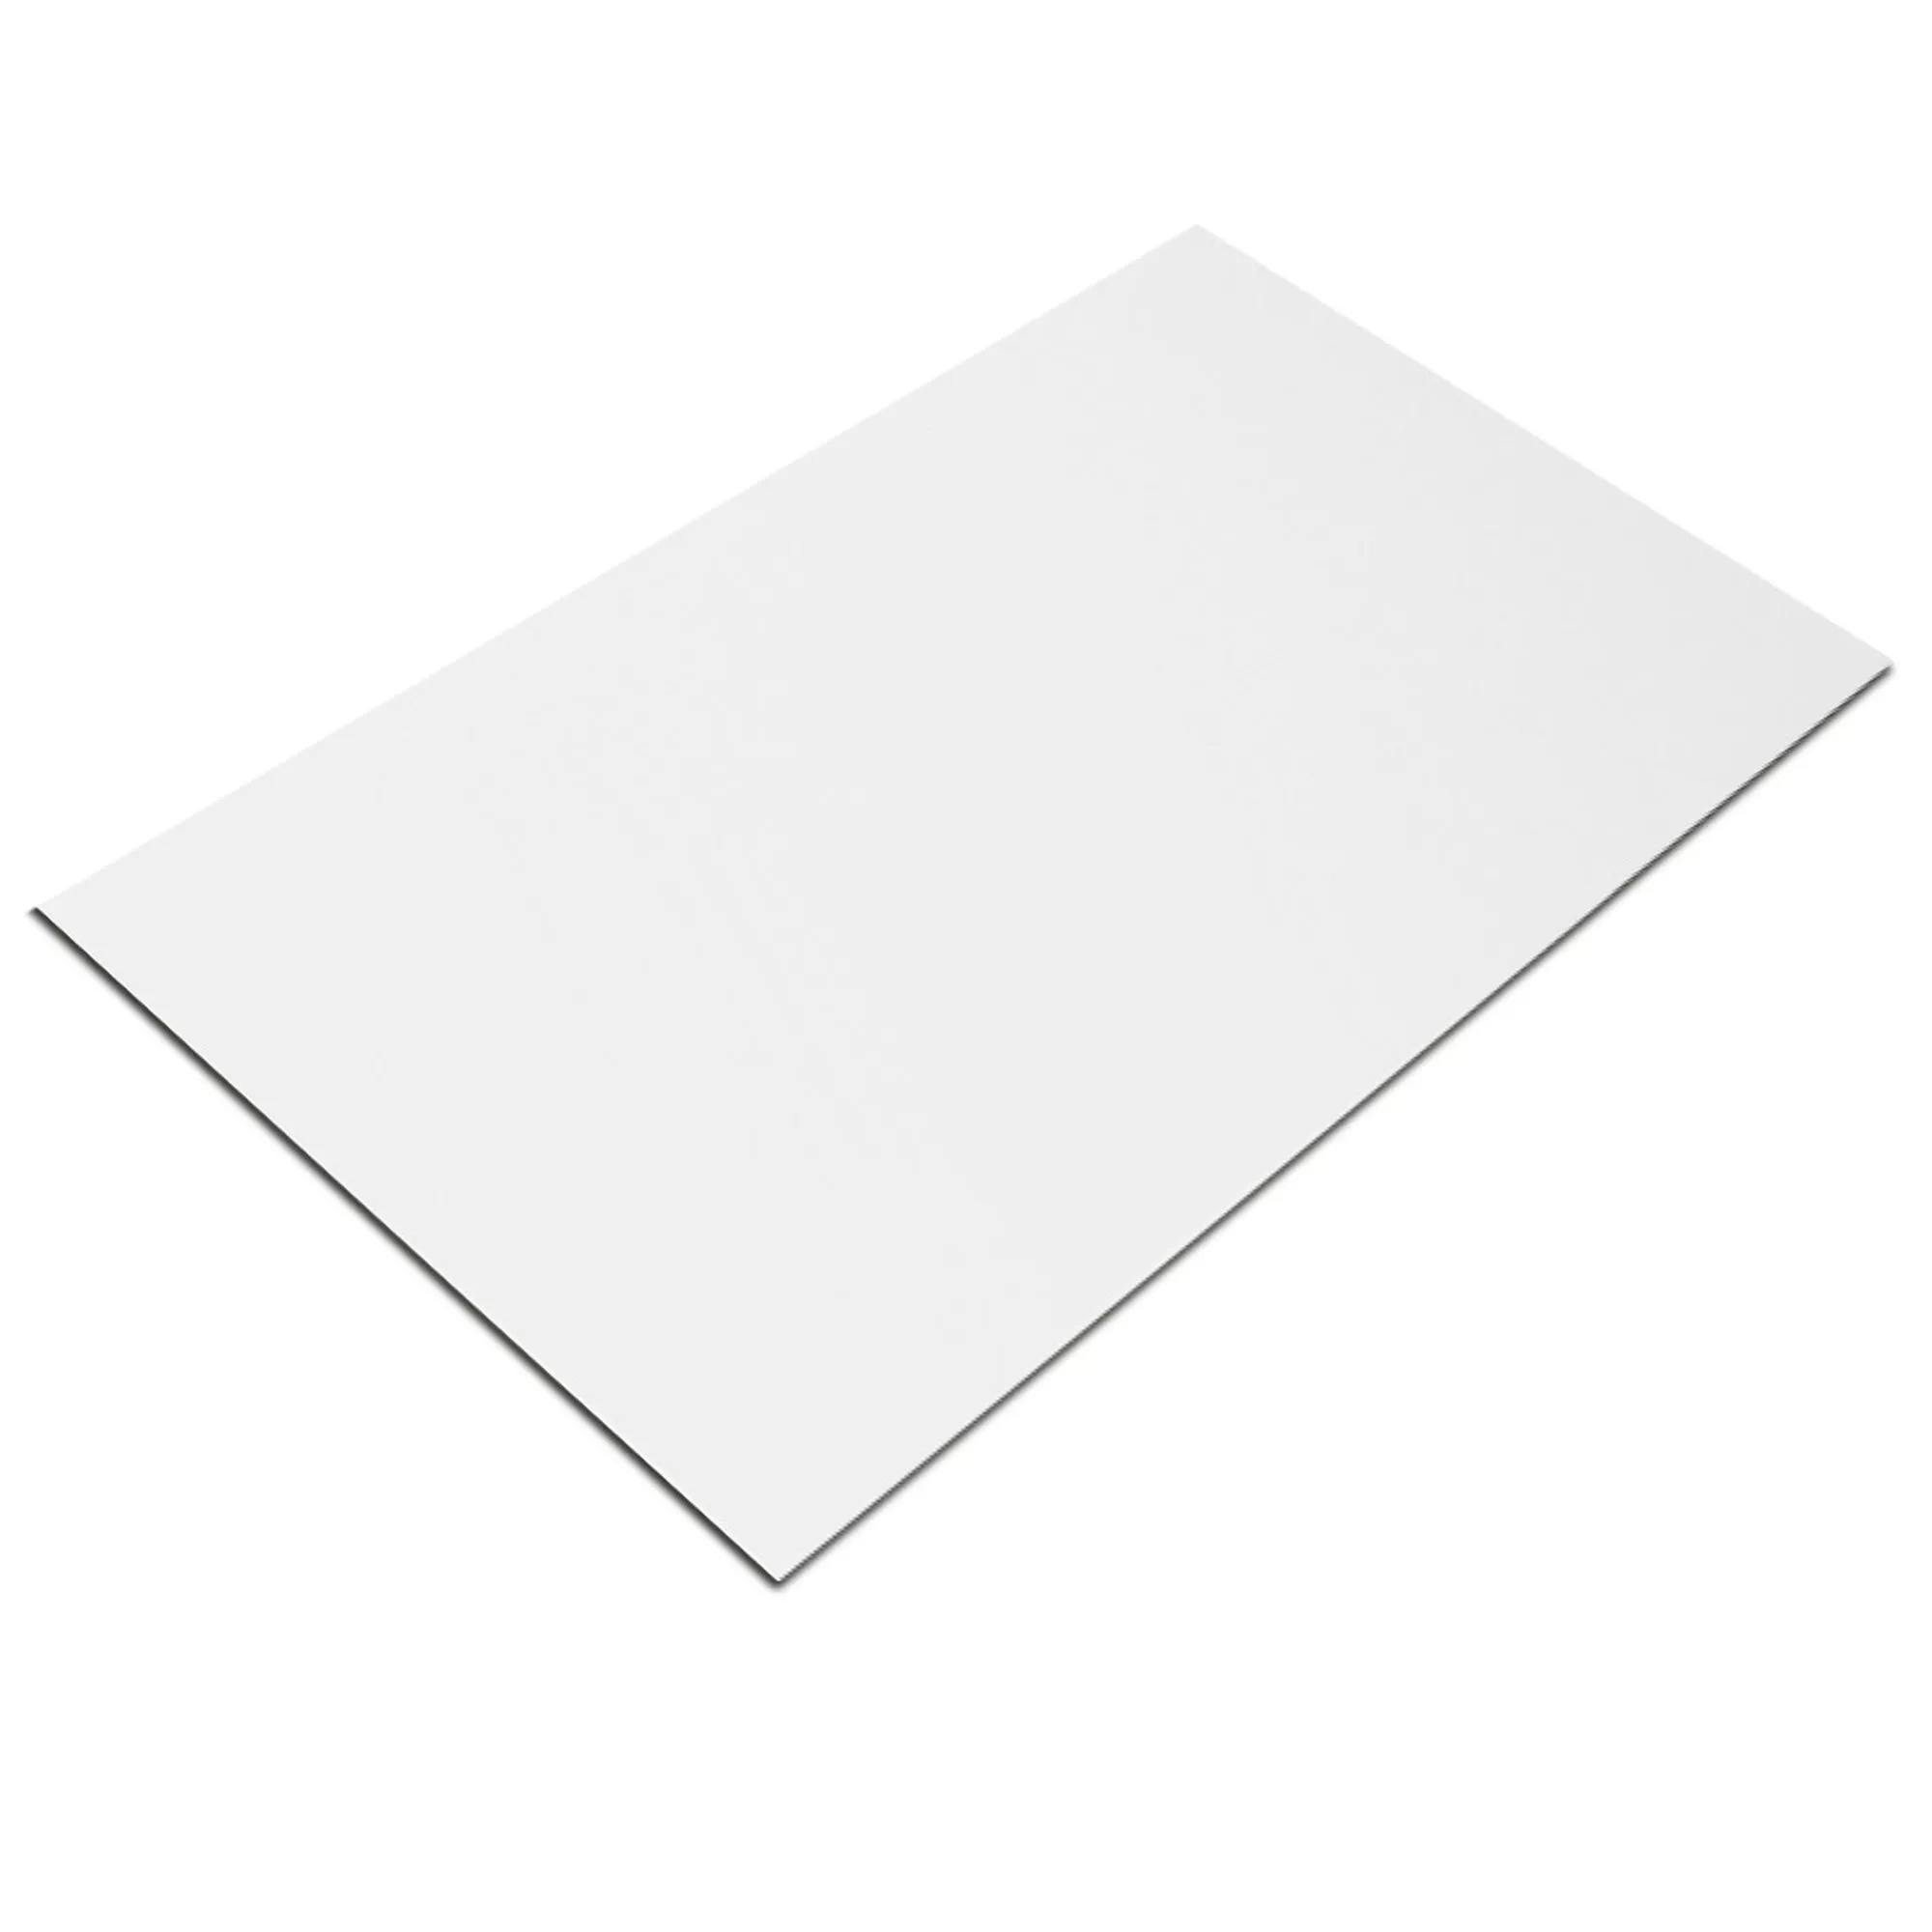 Próbka Płytki Ścienne Fenway Biały Matowy 25x50cm